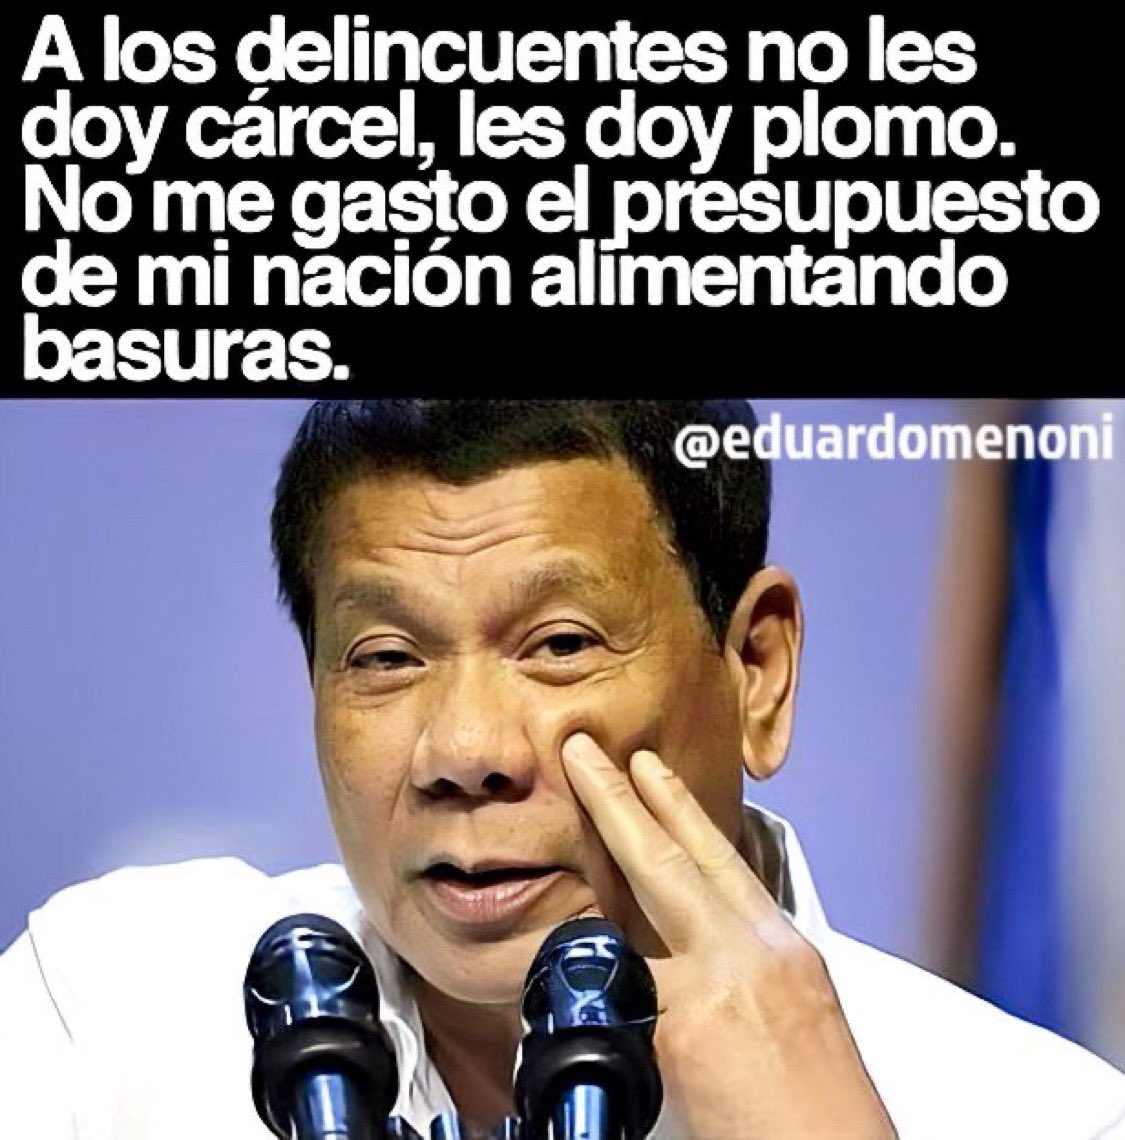 ¿Estás de acuerdo con el expresidente de Filipinas?